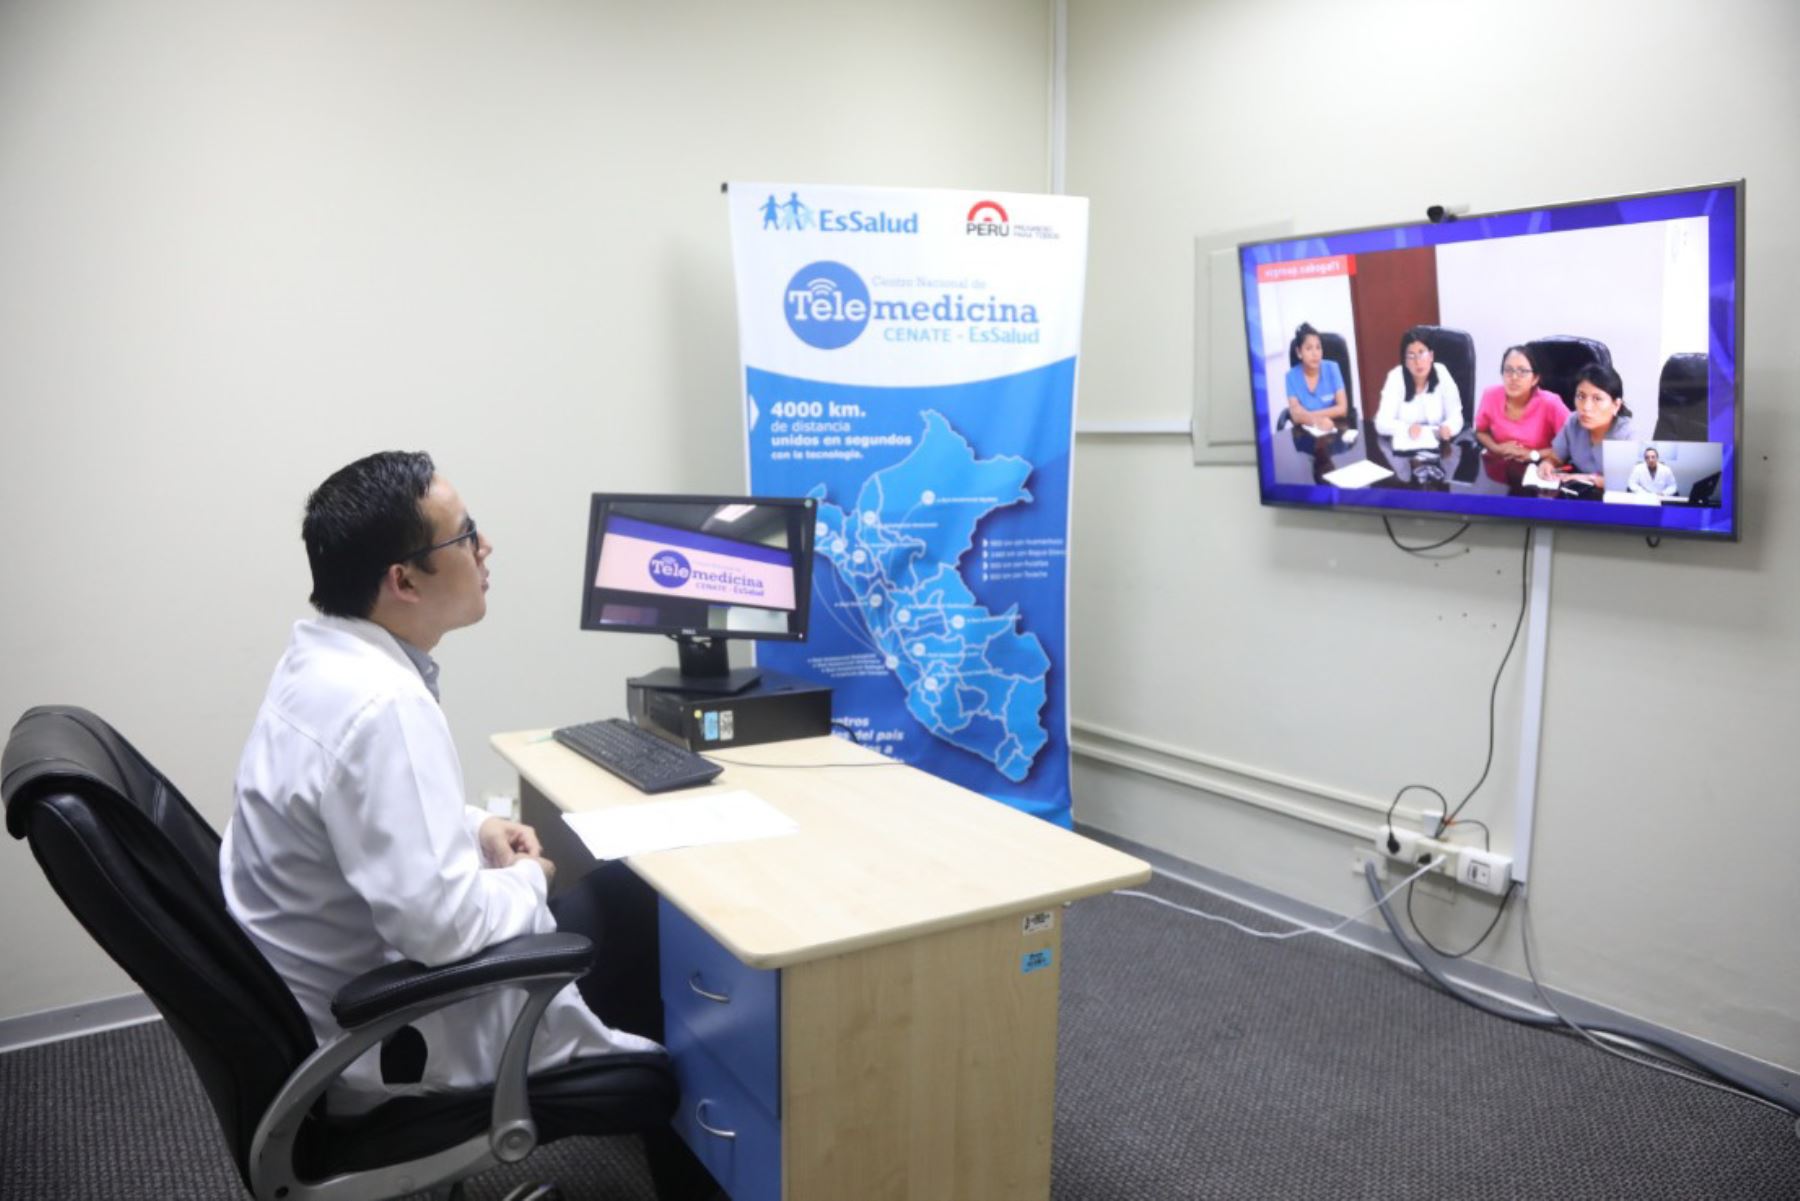 EsSalud Apurímac, en coordinación con el Centro Nacional de Telemedicina, brinda atención especializada, mediante el uso de modernas tecnologías, en beneficio de la población asegurada apurimeña.